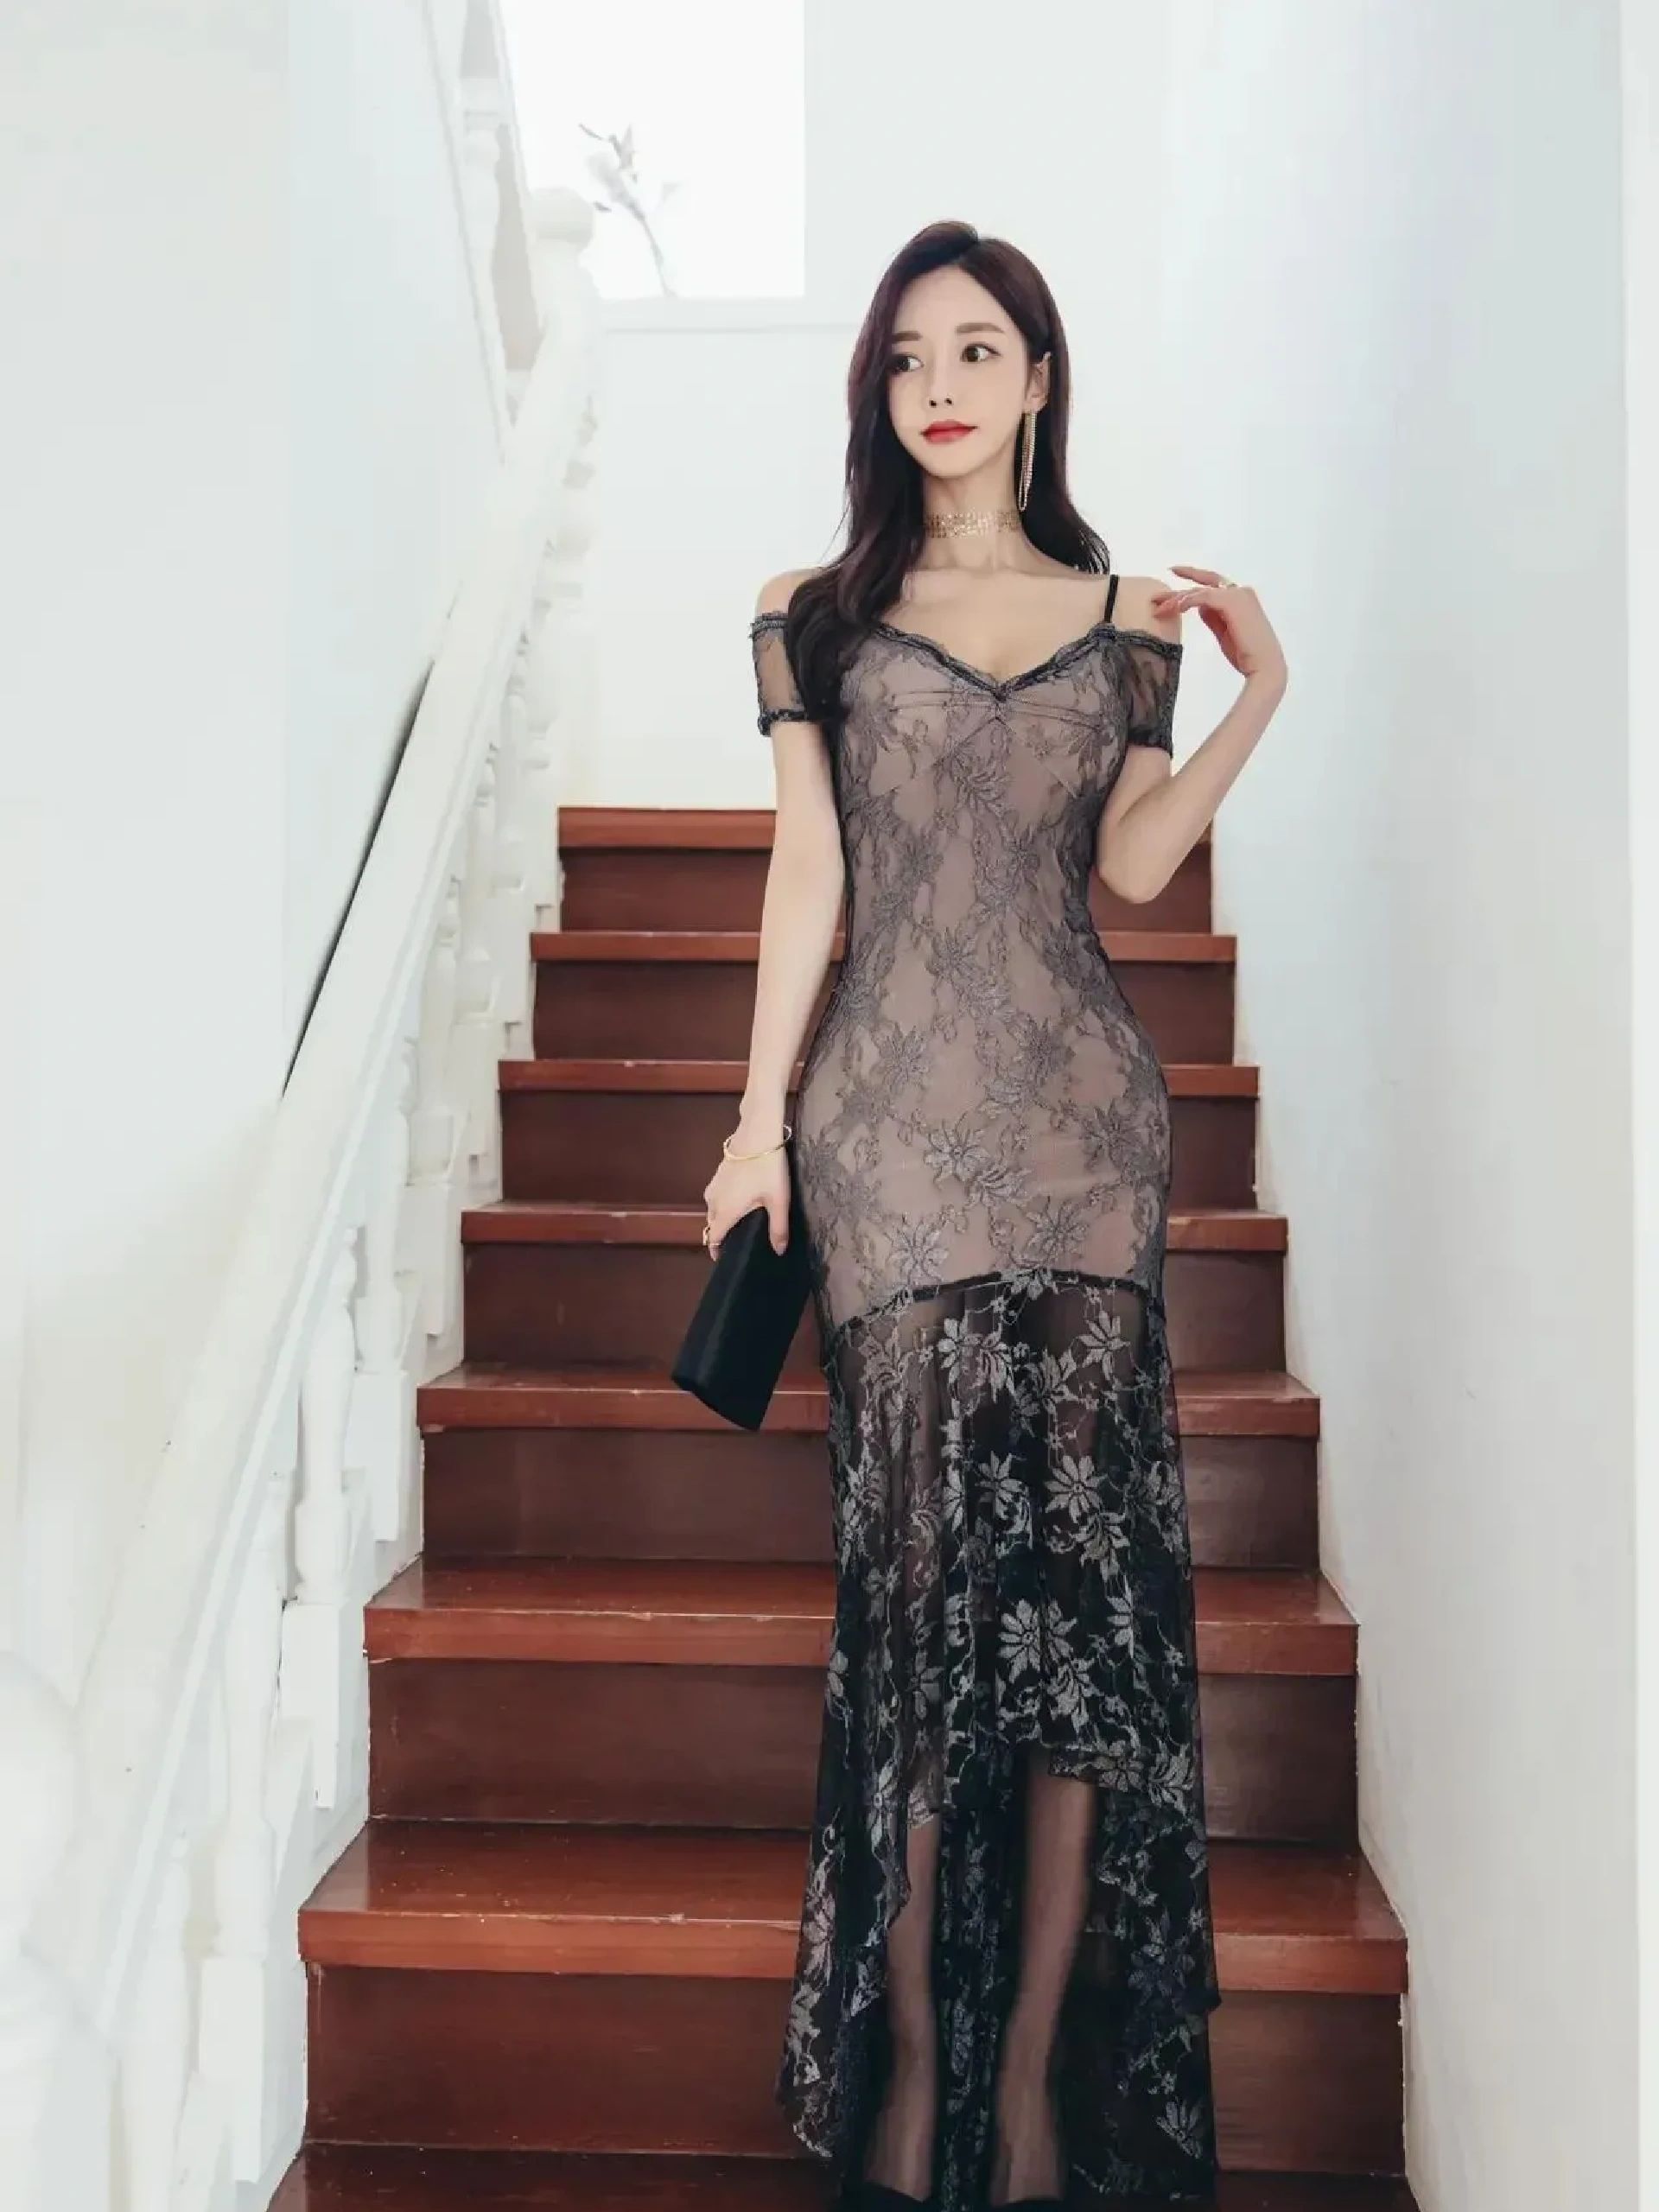 韩国美女孙允珠性感吊带黑色蕾丝黑纱裙楼梯间优雅写真图片套图1